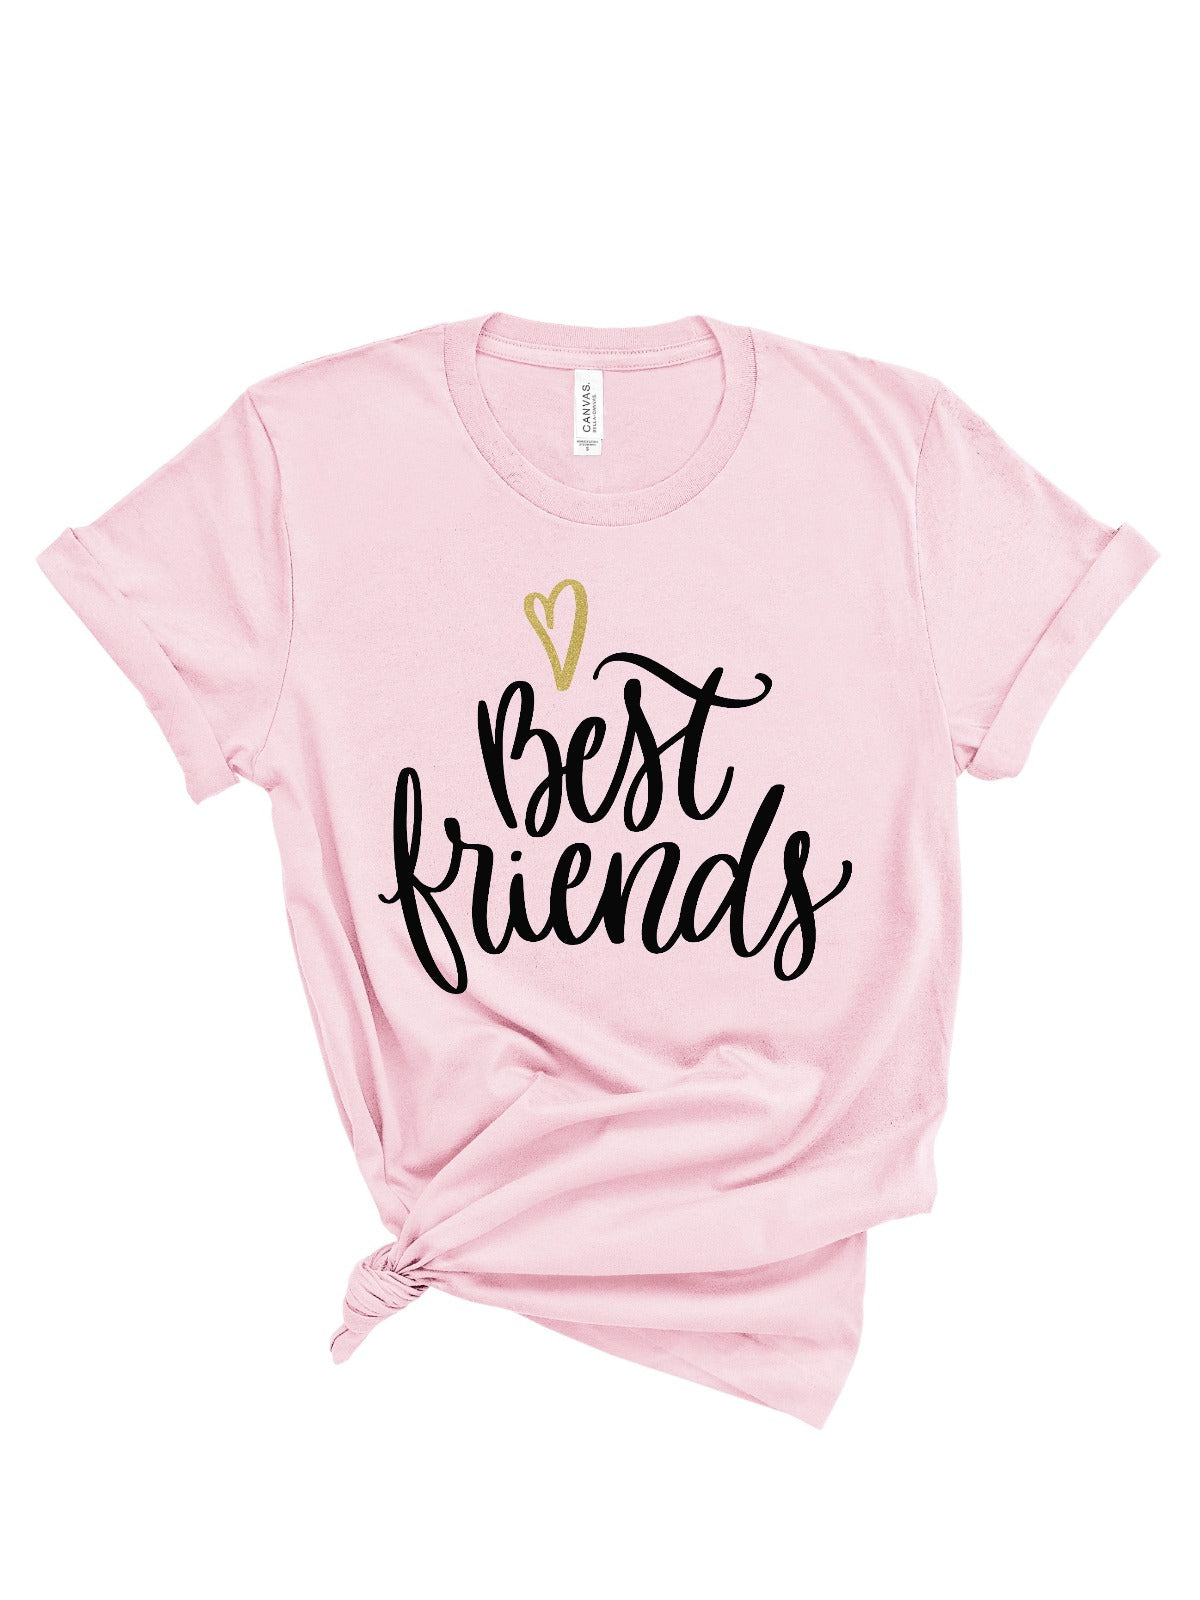 womens best friends shirts